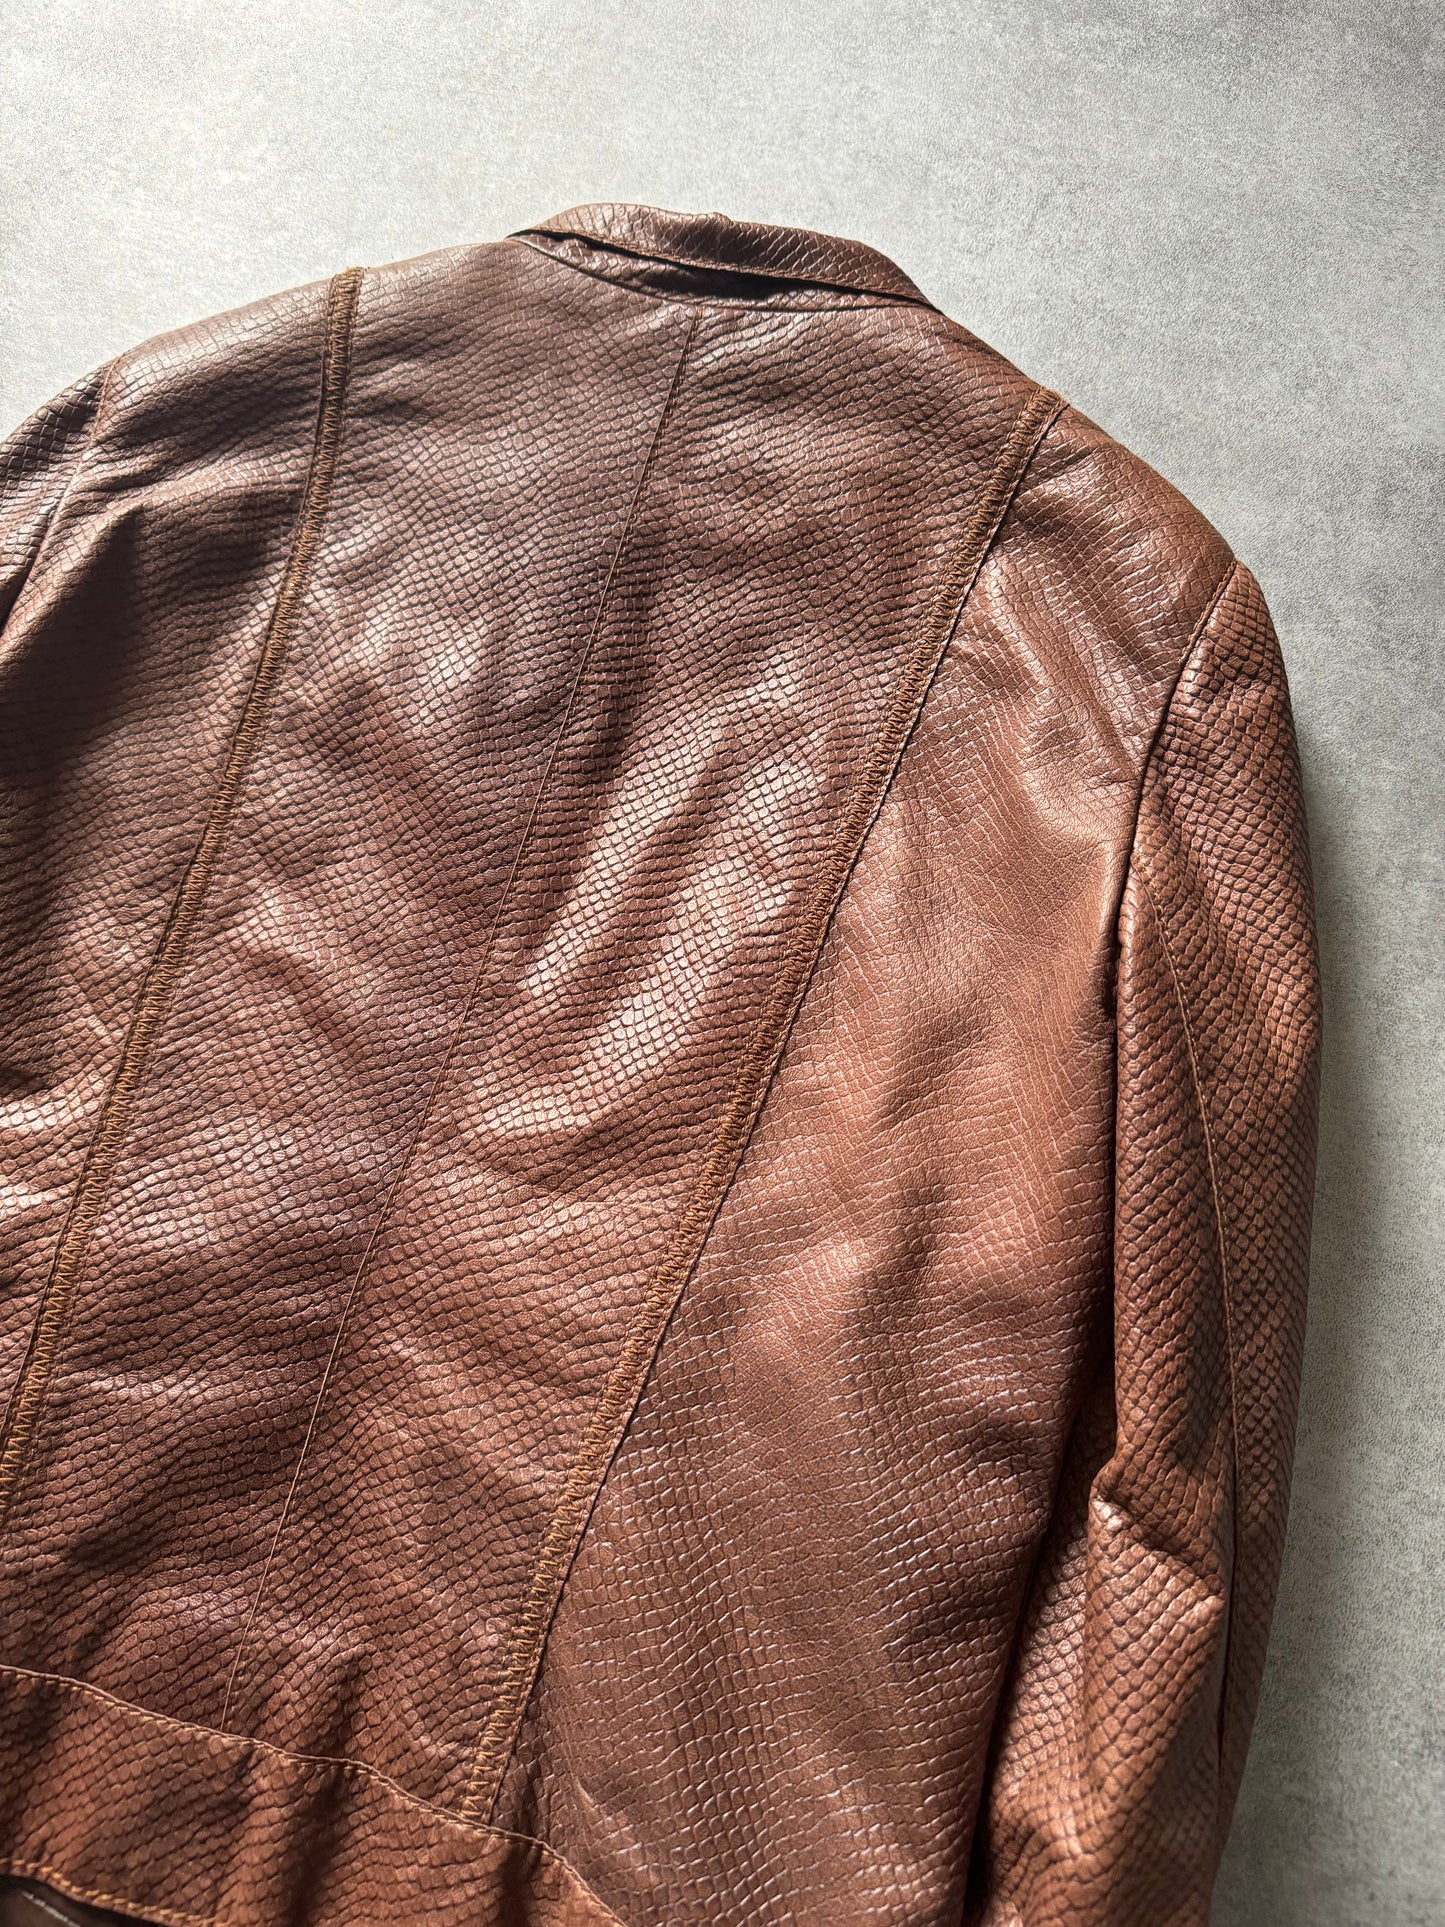 AW2007 Emporio Armani Python Effect Brown Leather Jacket  (XS) - 6